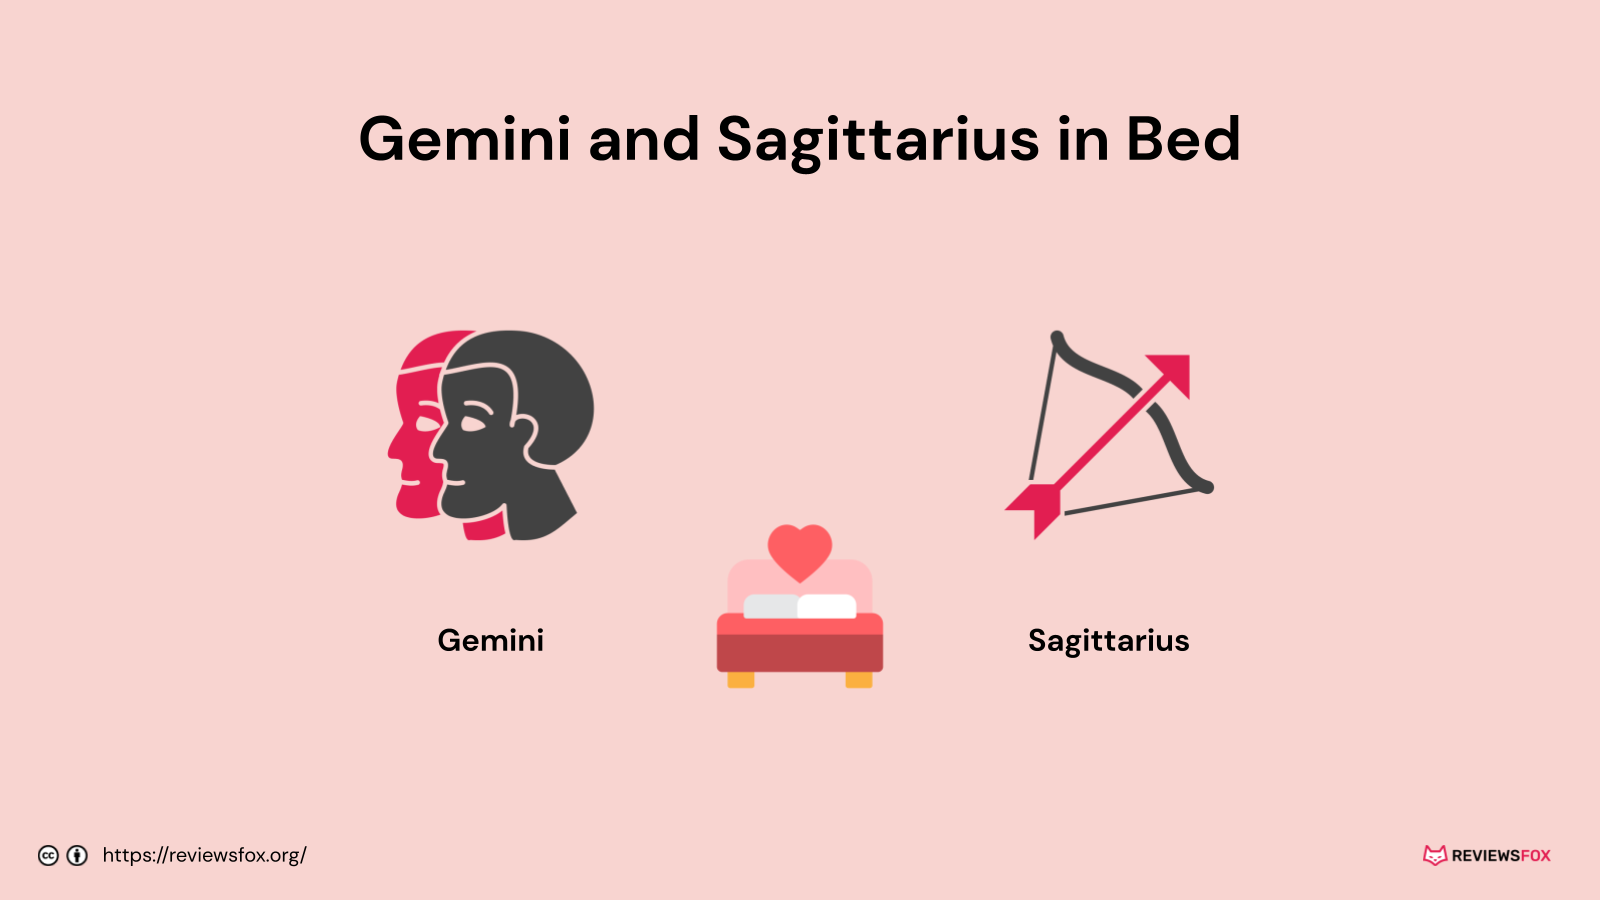 Gemini and Sagittarius in bed